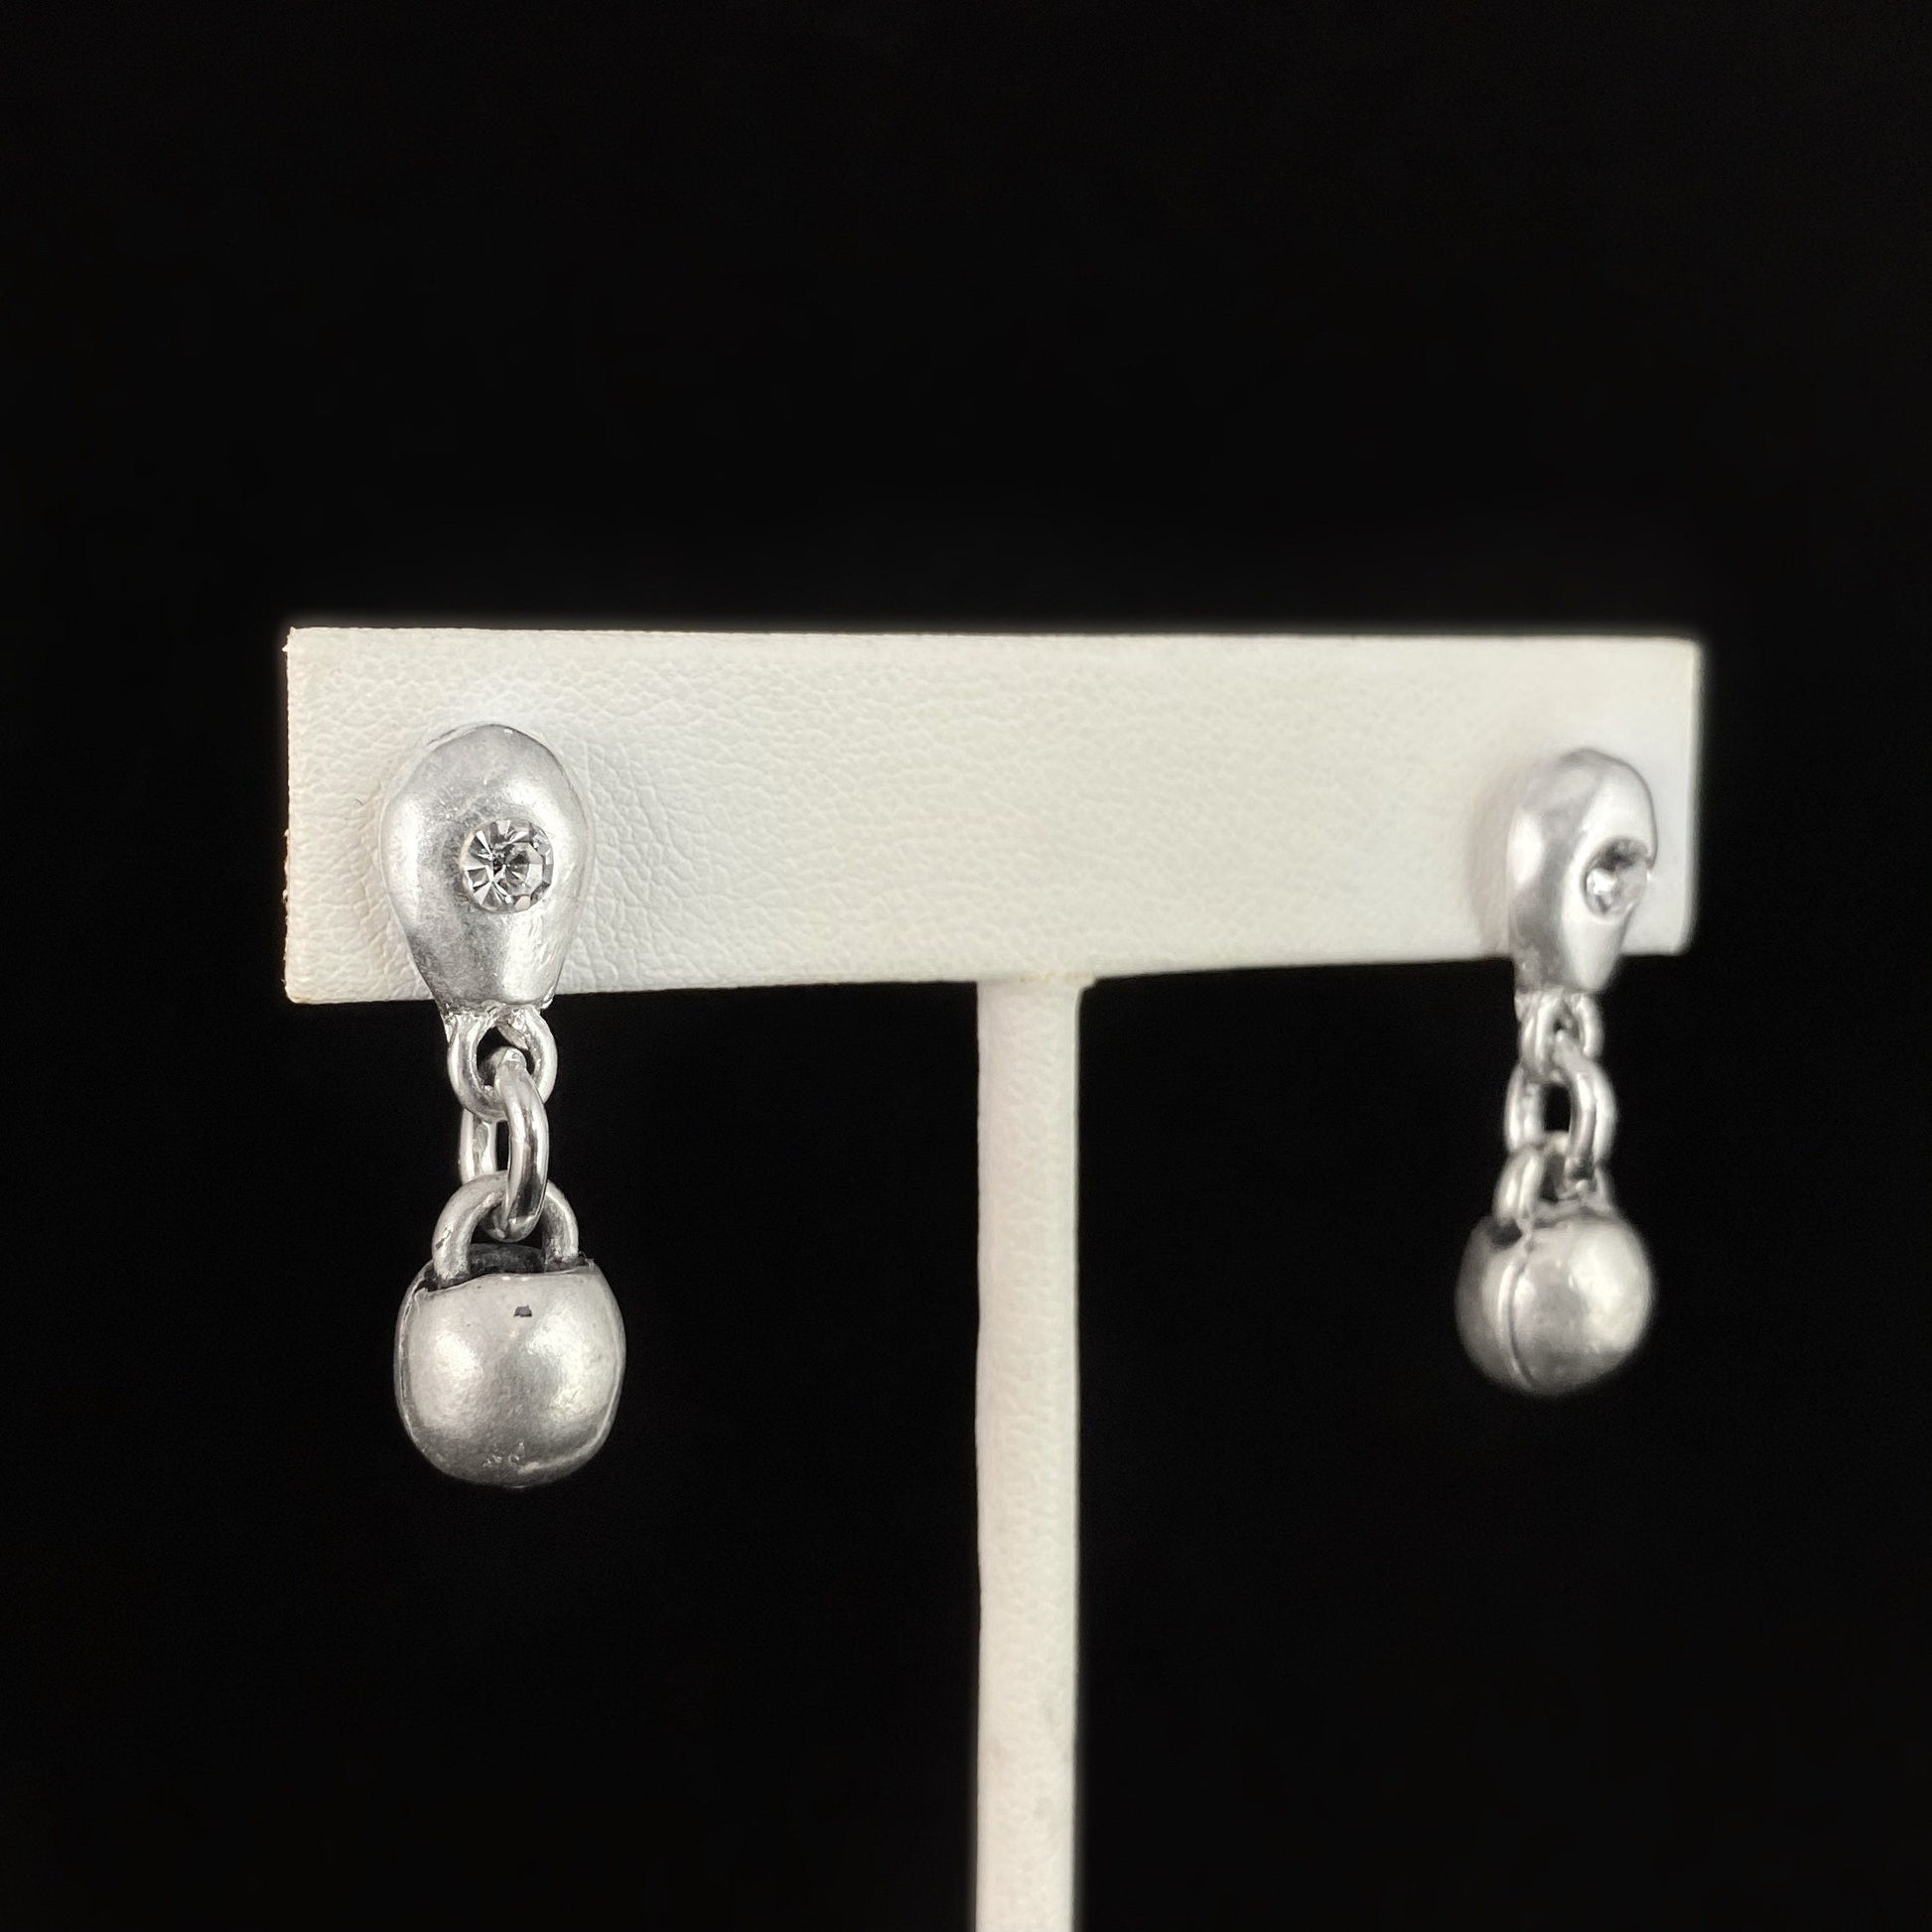 Silver Drop Earrings with Crystal, Handmade Nickel Free